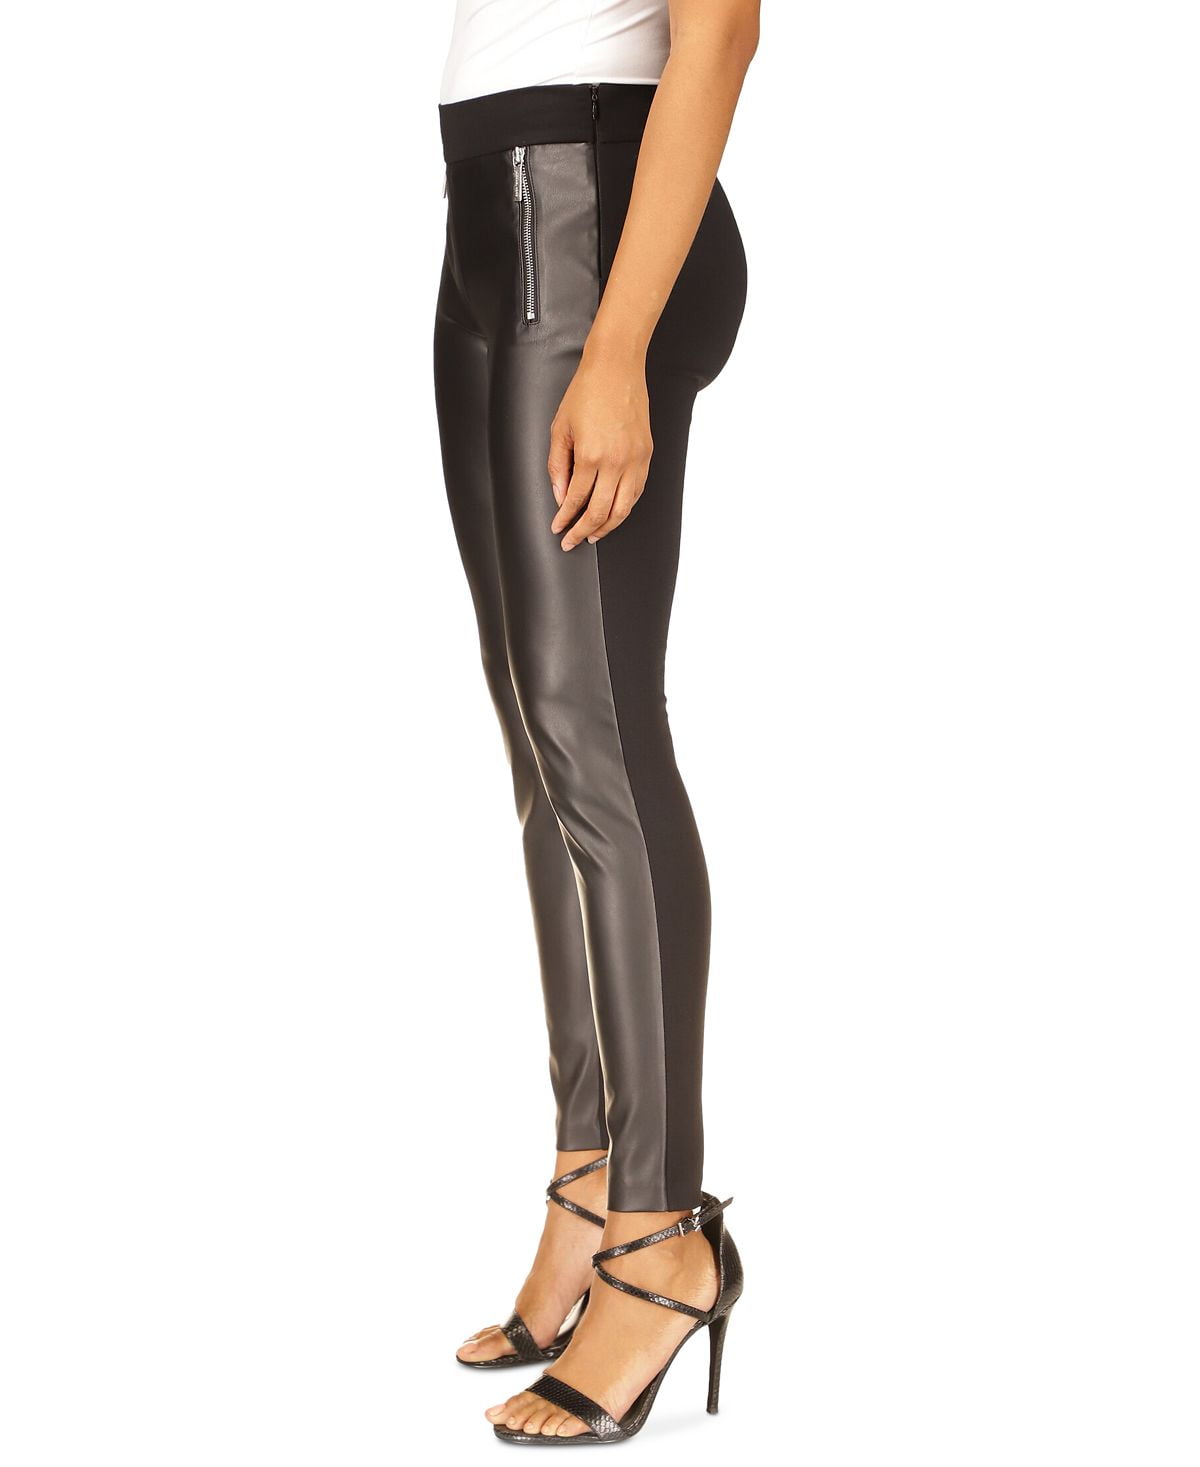 Michael Kors Women's Mixed Media Skinny Pants Black Size Petite